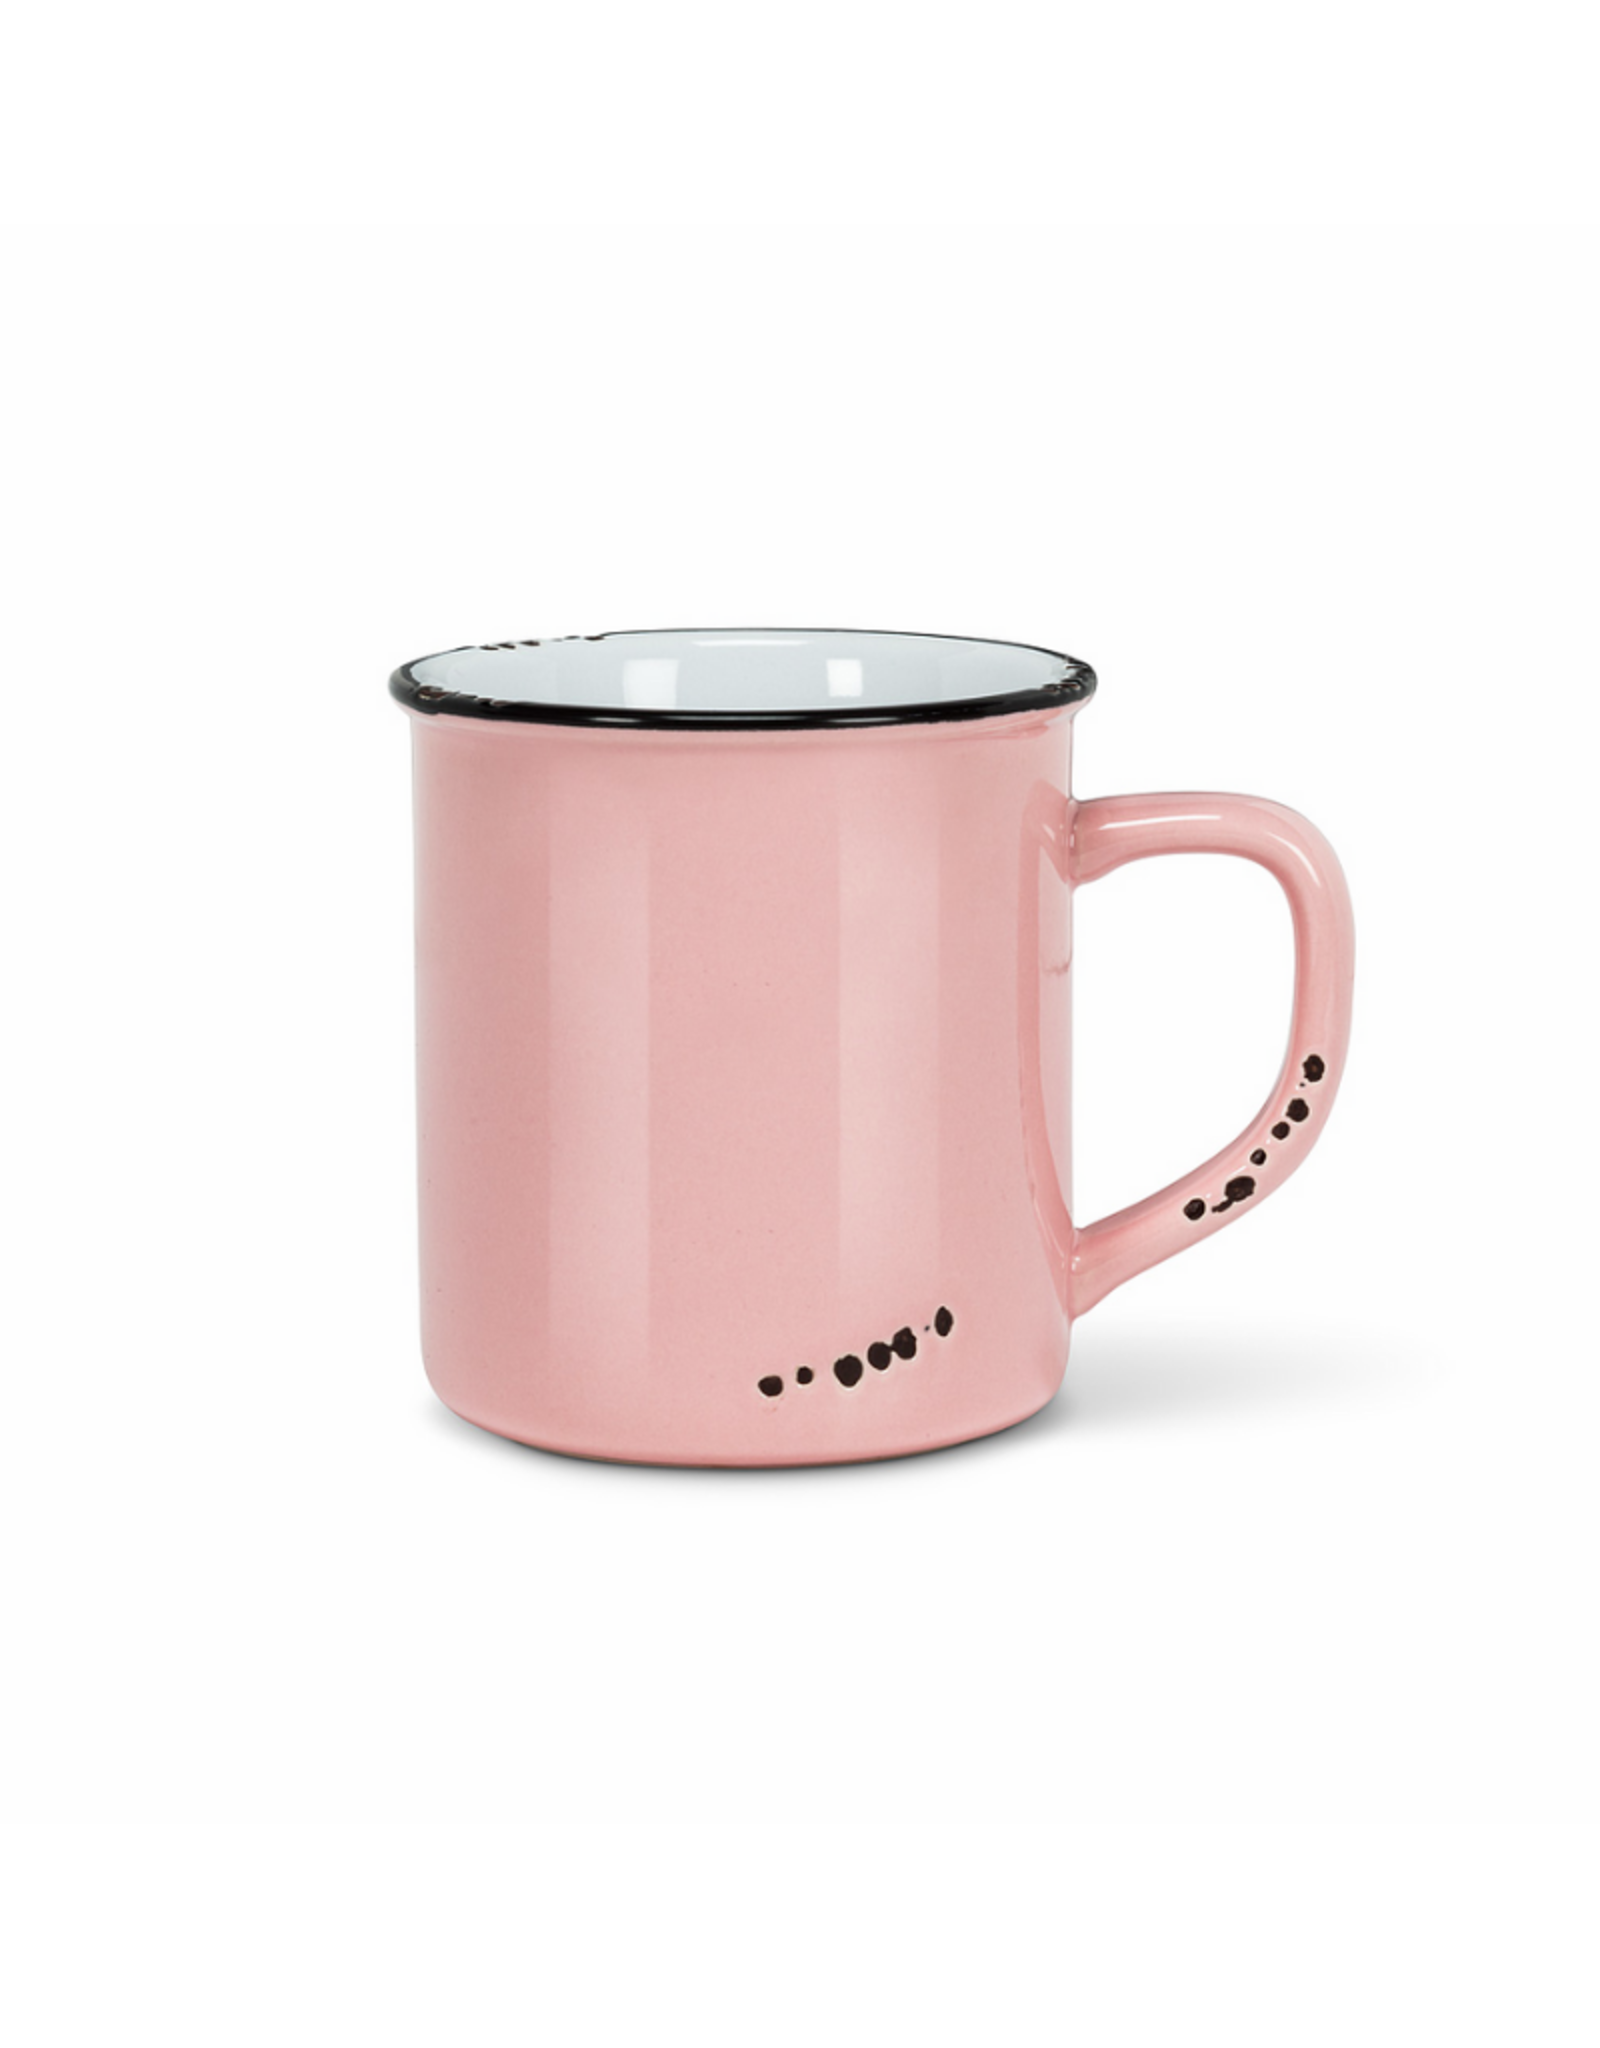 Abbott Tasse à café look émaillé rose